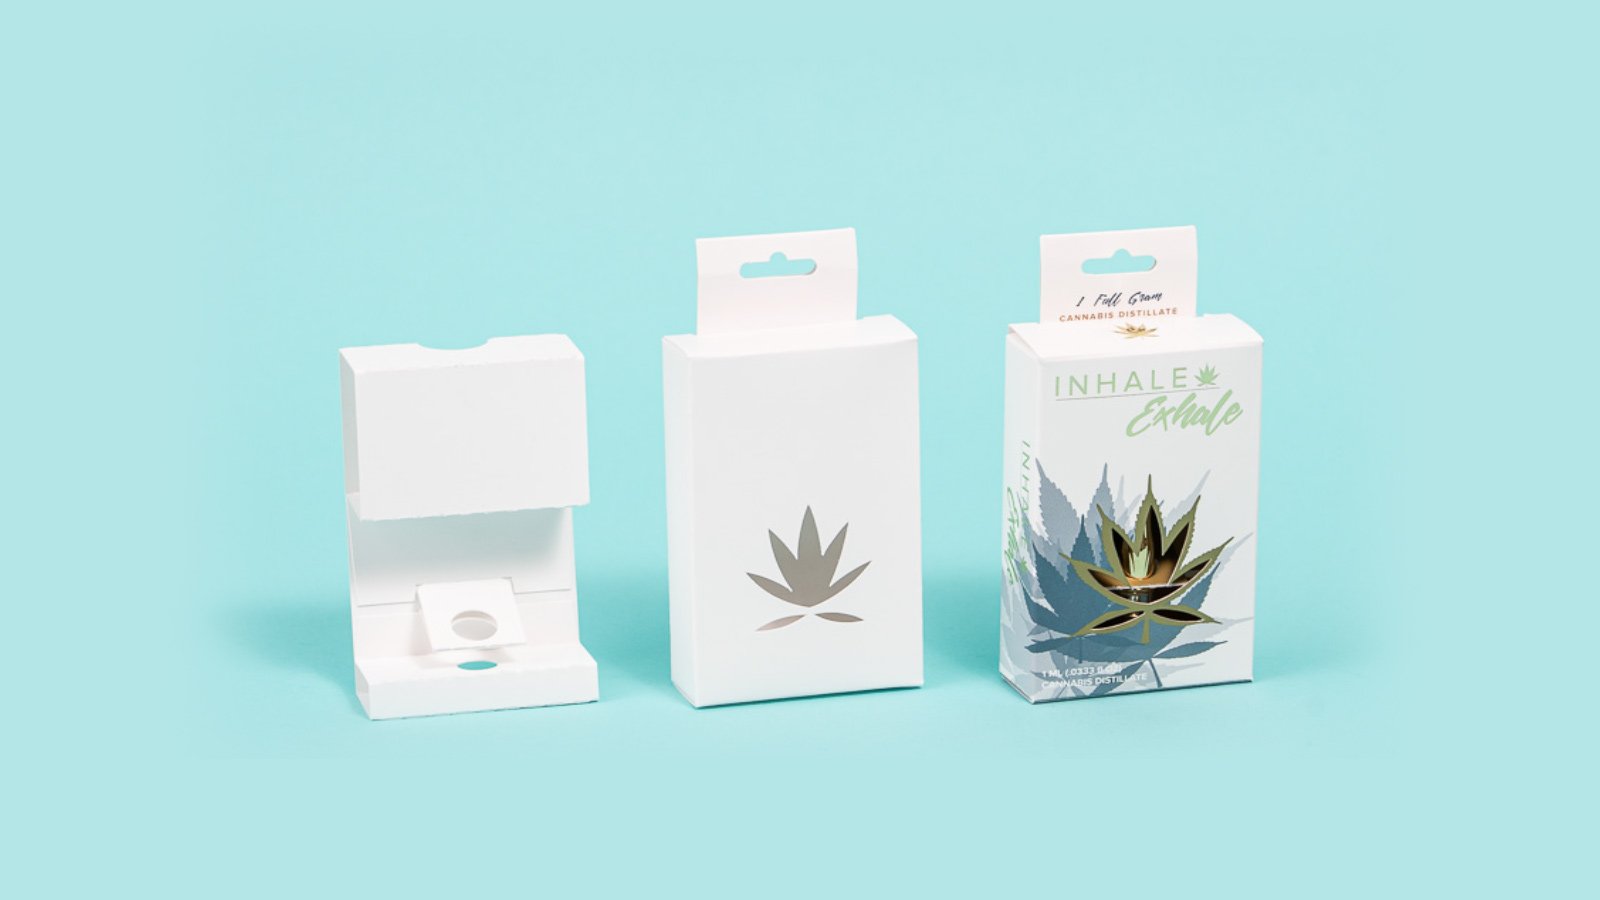 Inhale packaging